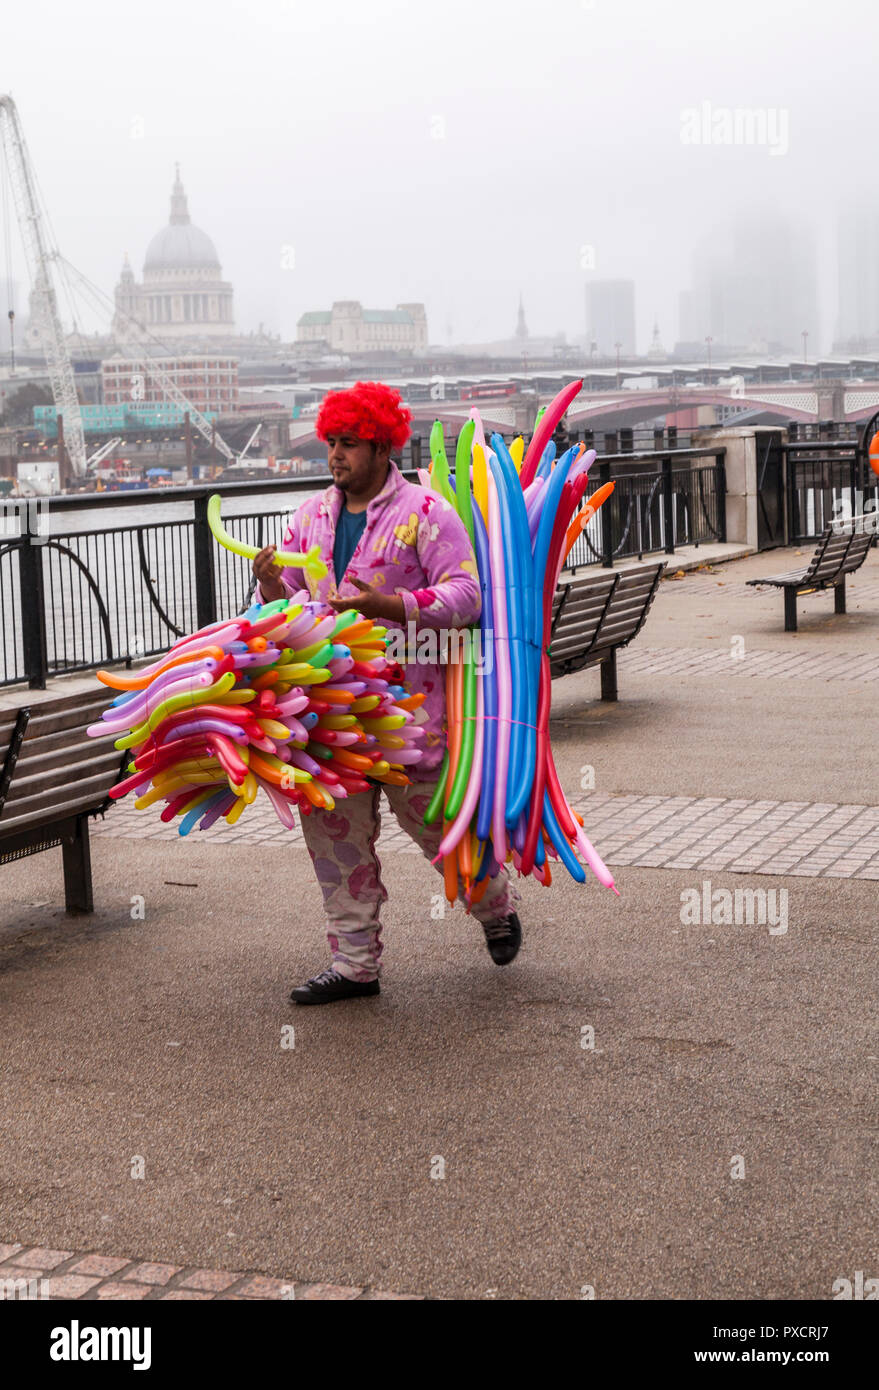 Un homme habillé de couleurs vives des ballons jouets vente sur la rive sud,Londres,Angleterre,UK Banque D'Images